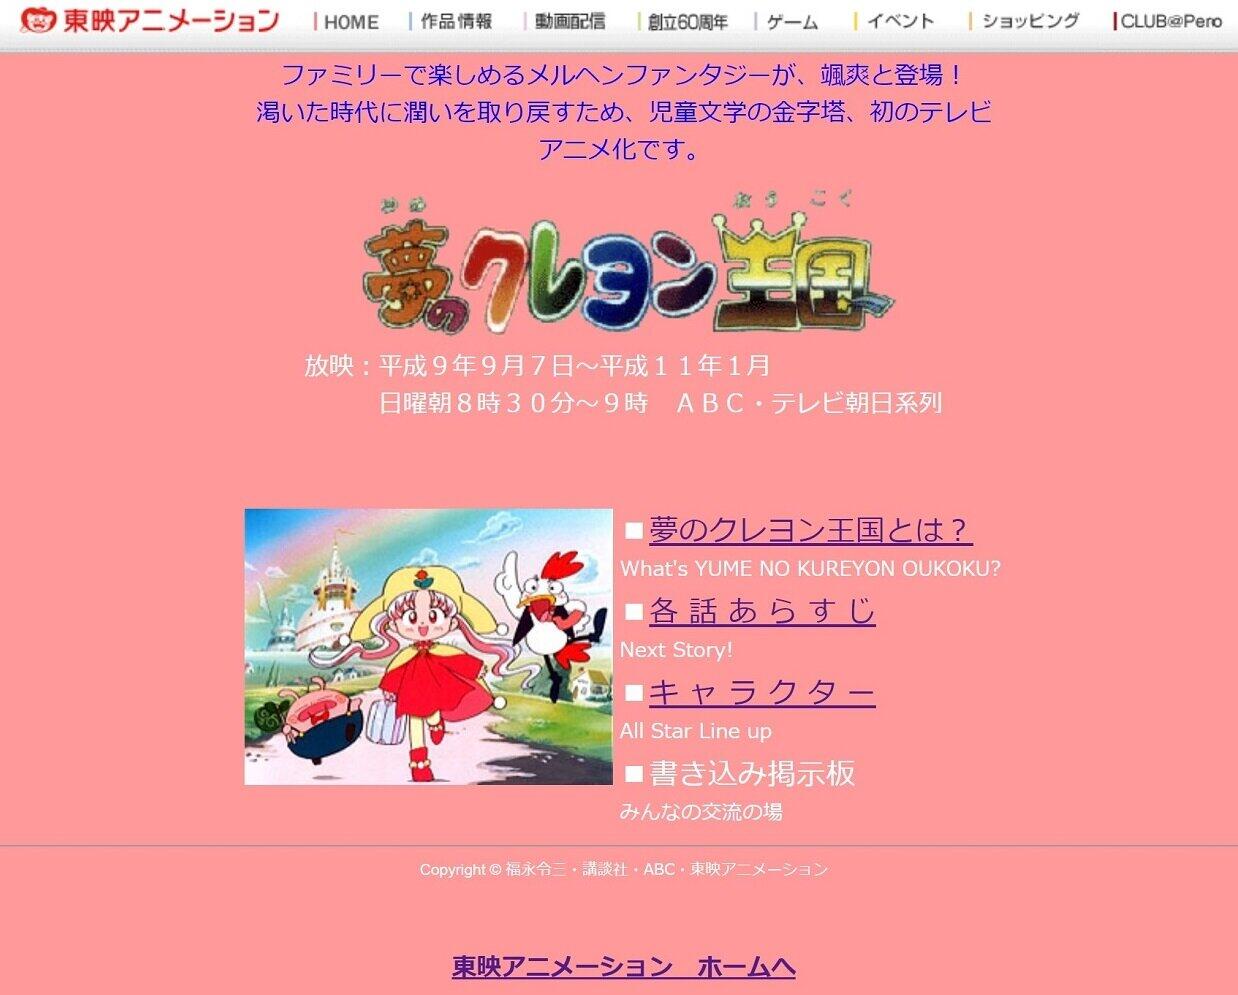 1990年代放送 夢のクレヨン王国 サイト健在 懐かしいアニメ公式サイトまだある J Cast トレンド